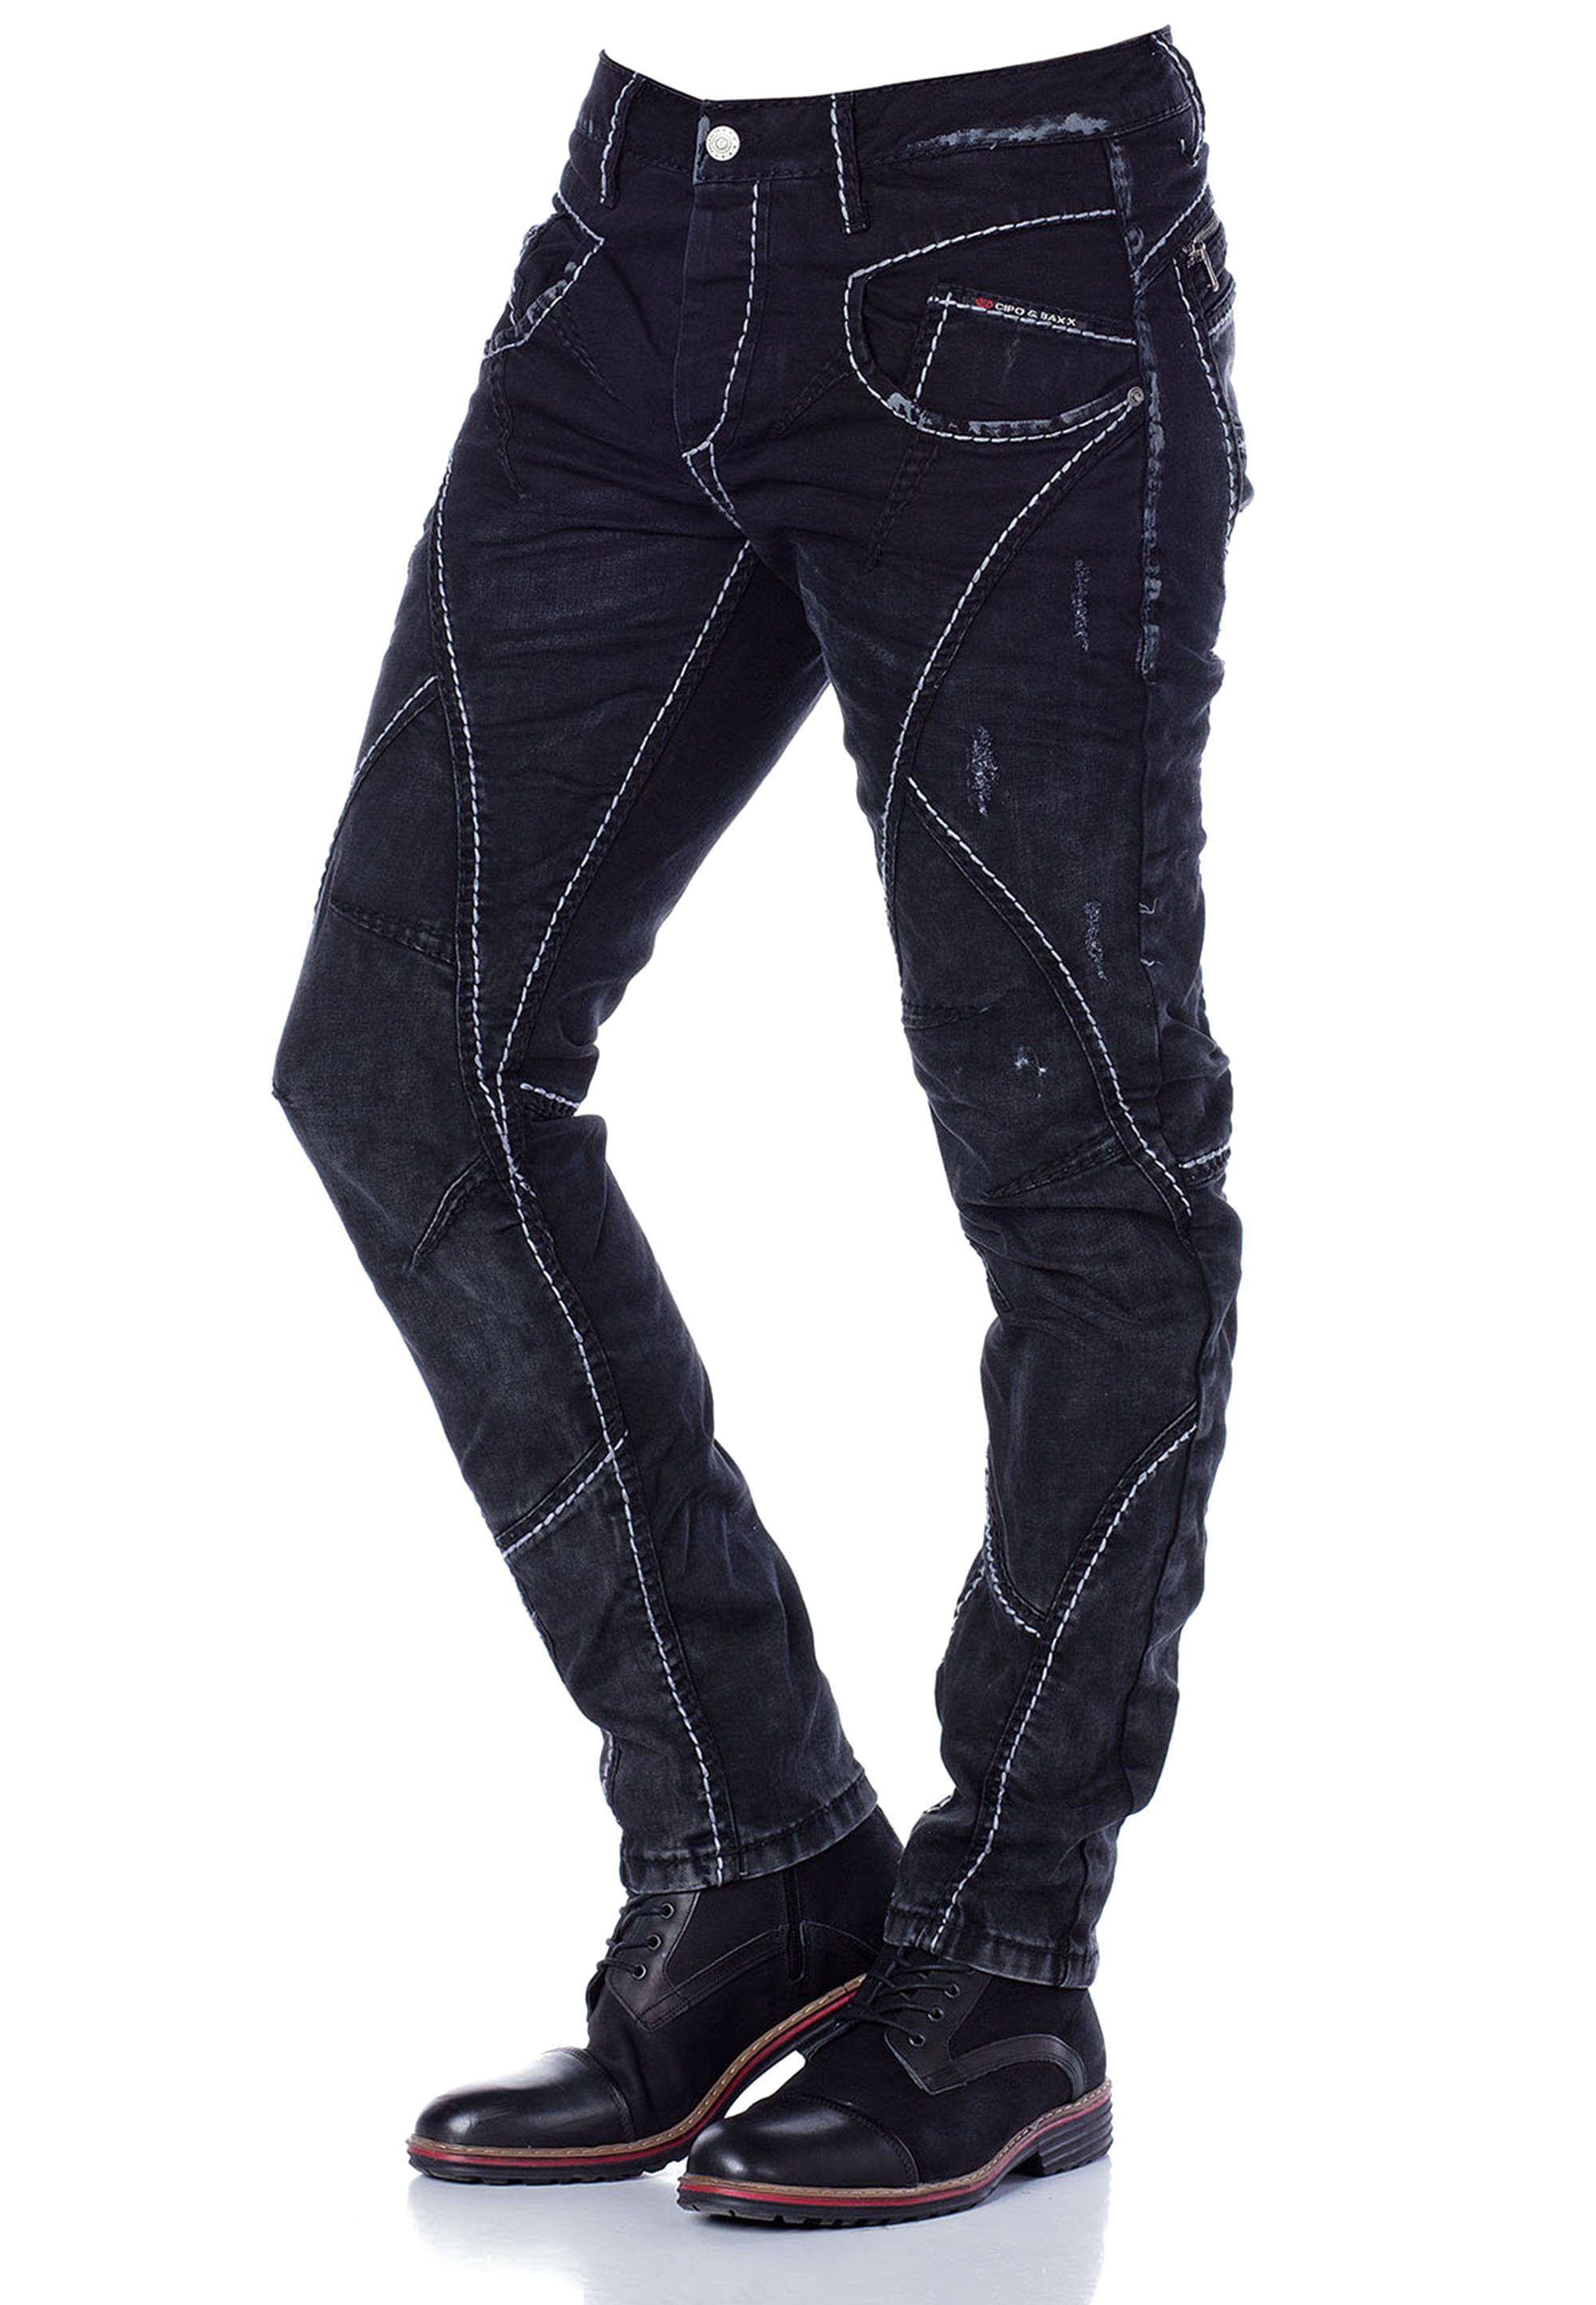 & Straight Baxx Teilungsnähten extravaganten Cipo mit in Fit Jeans Bequeme